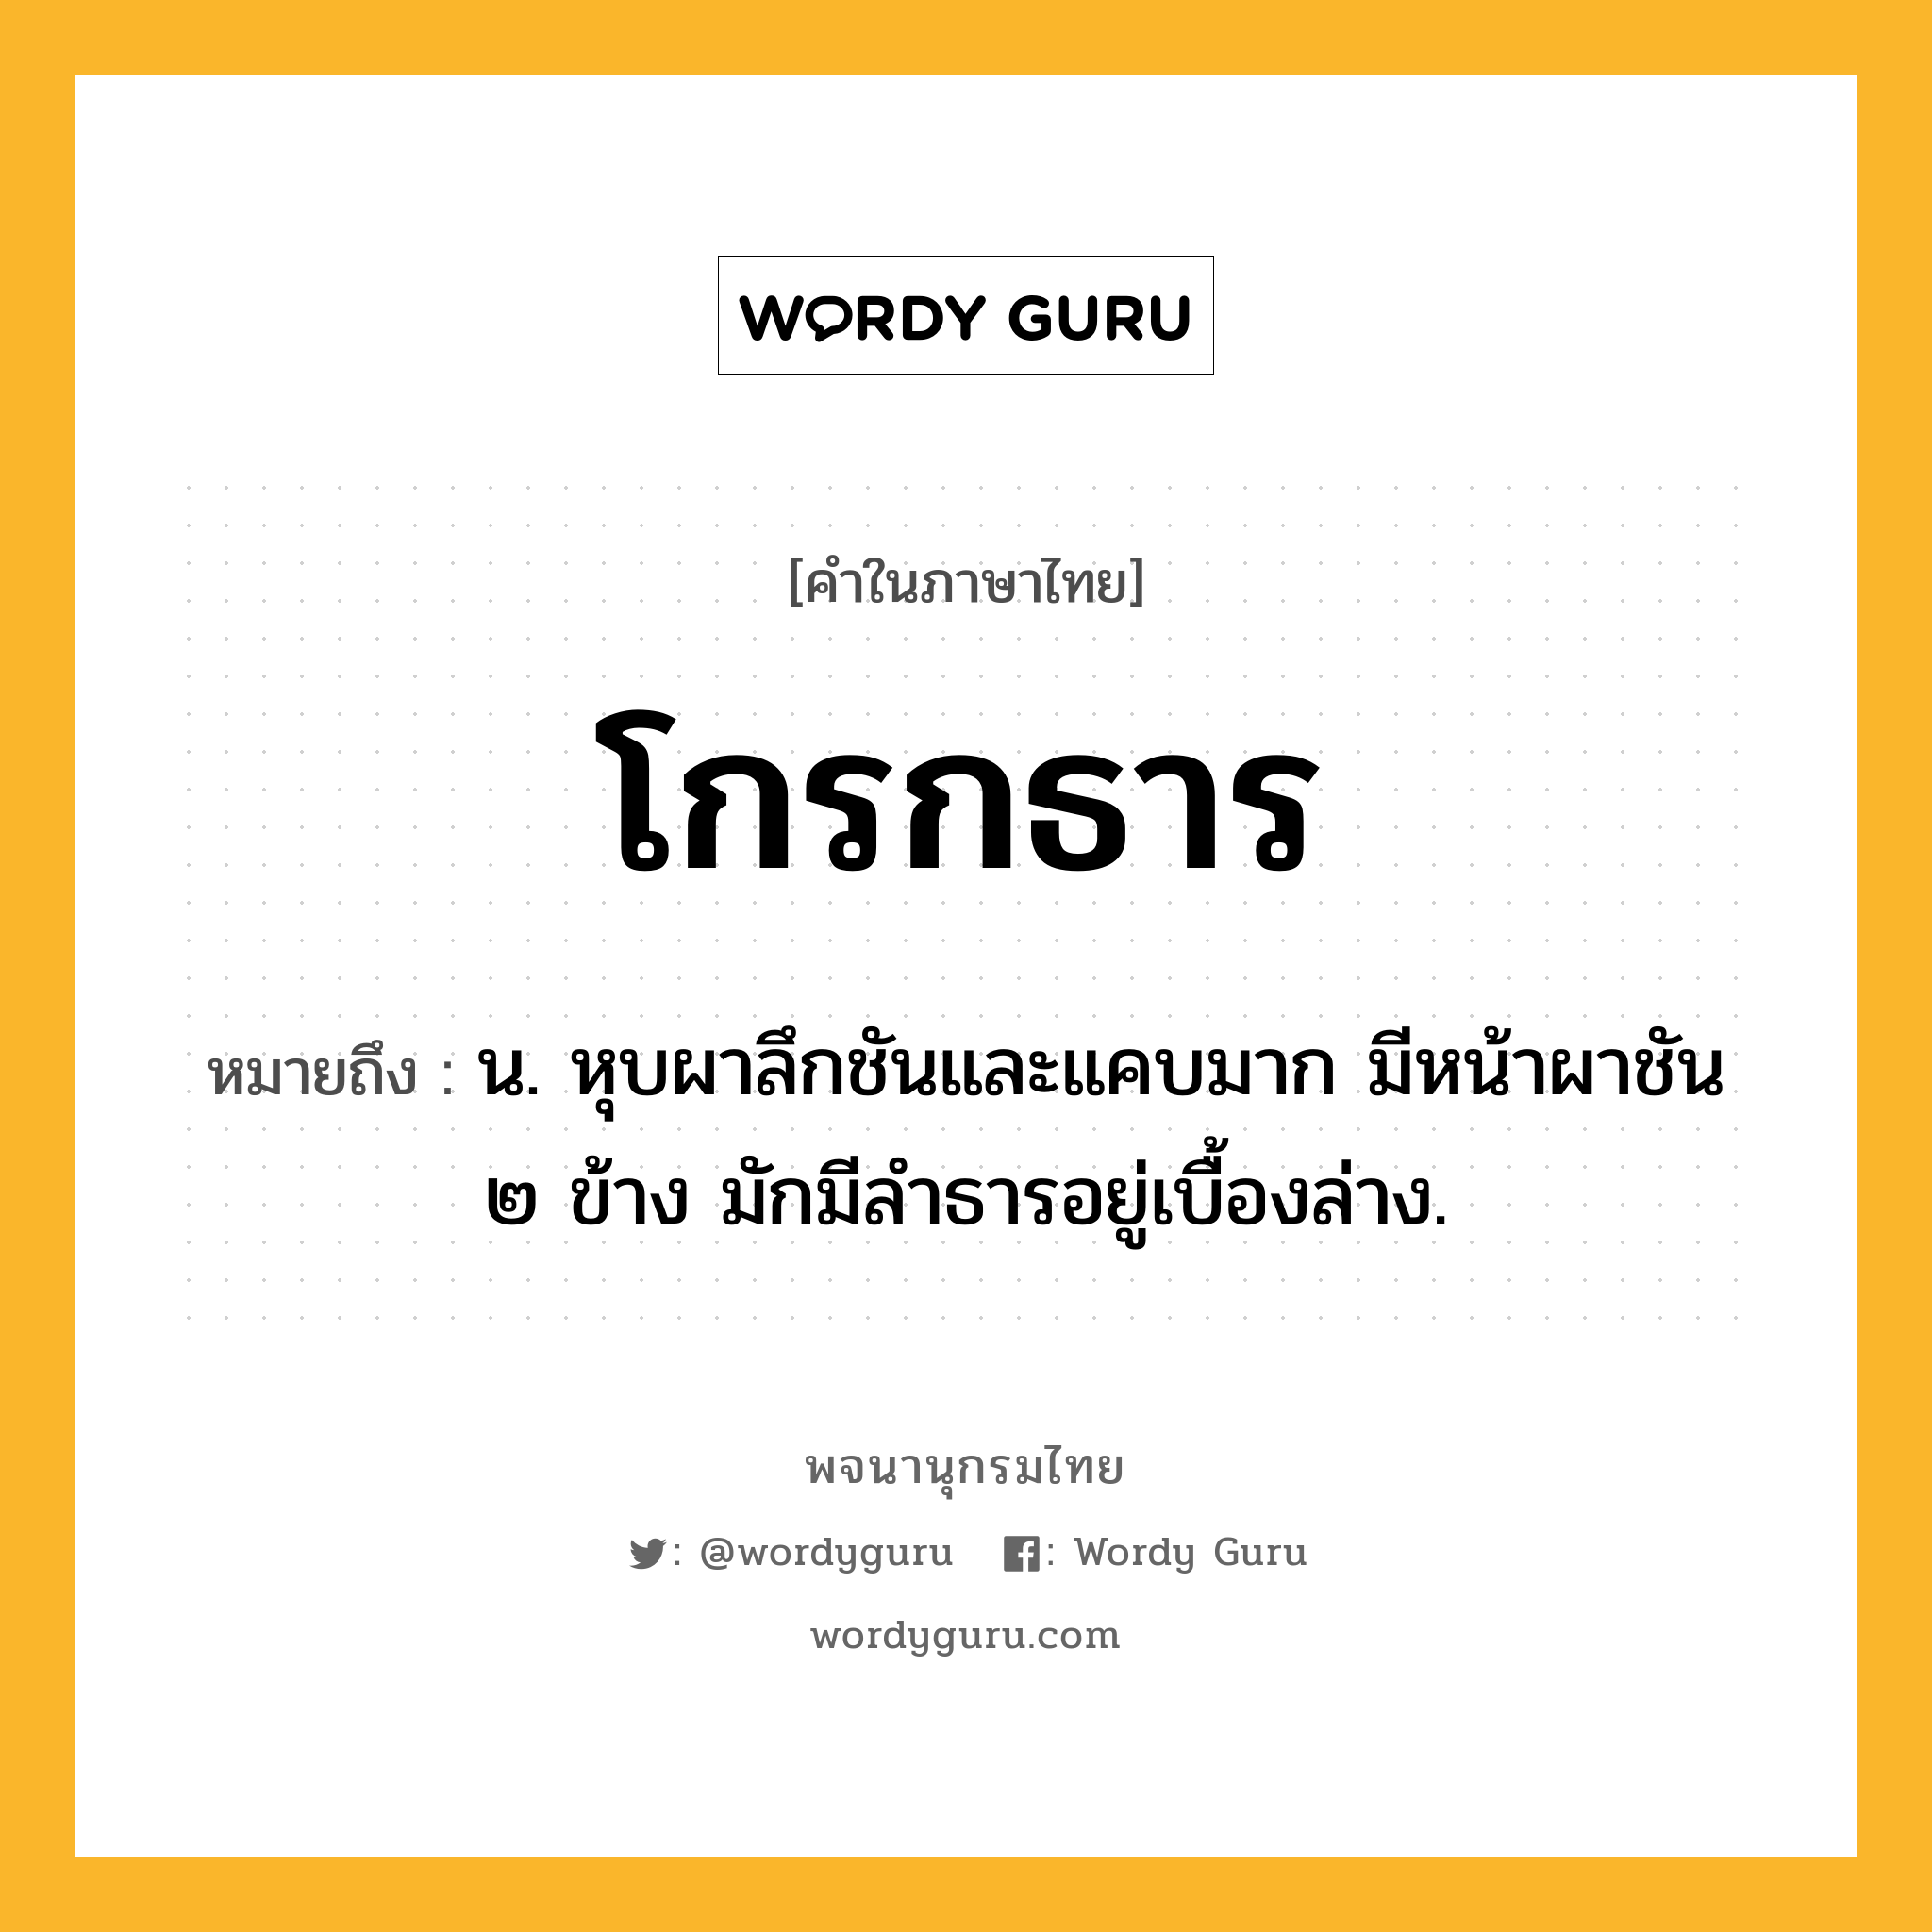 โกรกธาร หมายถึงอะไร?, คำในภาษาไทย โกรกธาร หมายถึง น. หุบผาลึกชันและแคบมาก มีหน้าผาชัน ๒ ข้าง มักมีลําธารอยู่เบื้องล่าง.